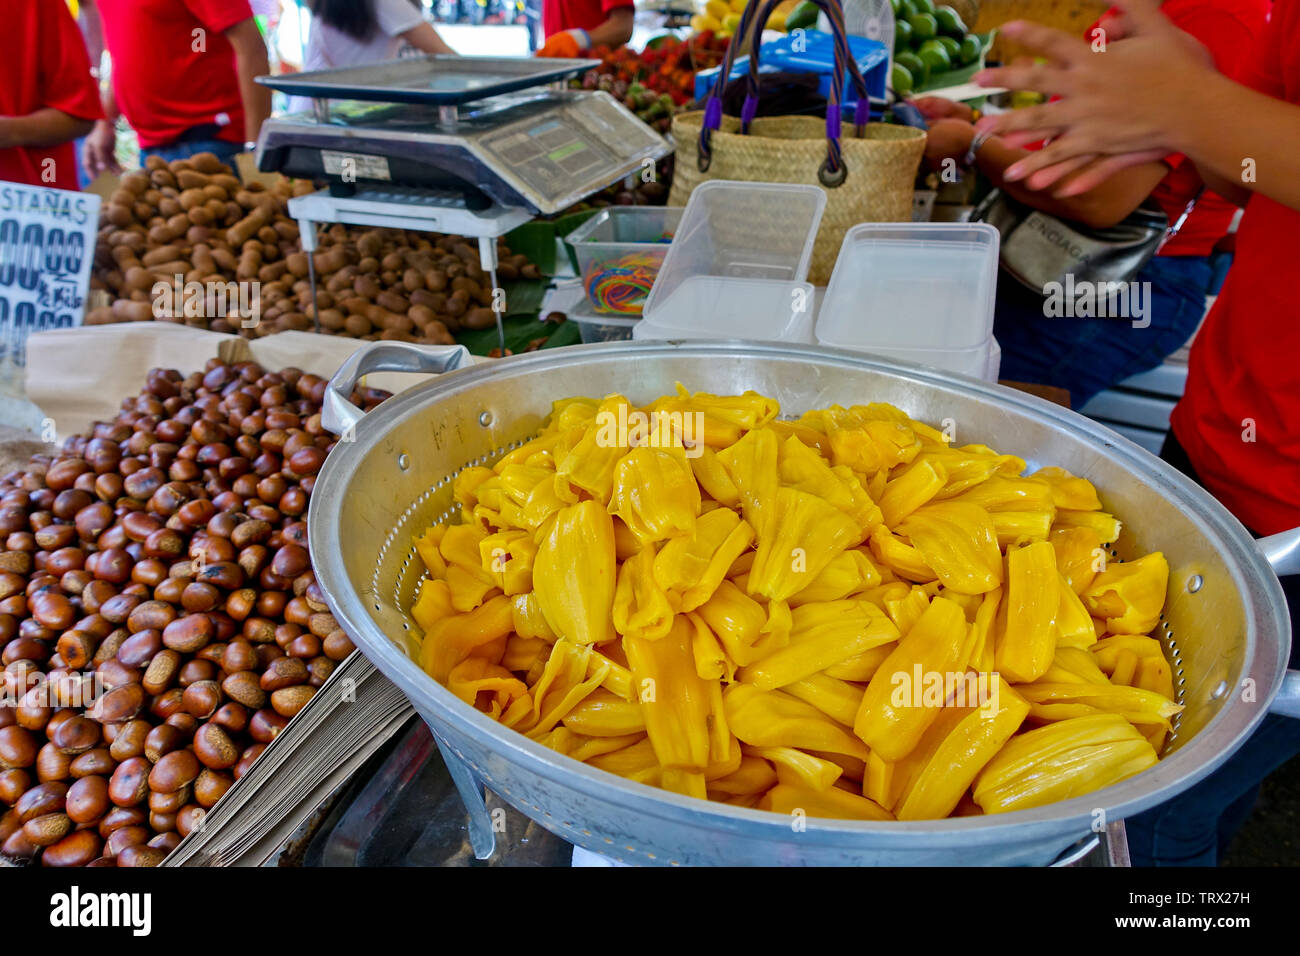 Une variété de fruits et de noix sont certains des choix alimentaires à Salcedo Village marché le samedi. Banque D'Images